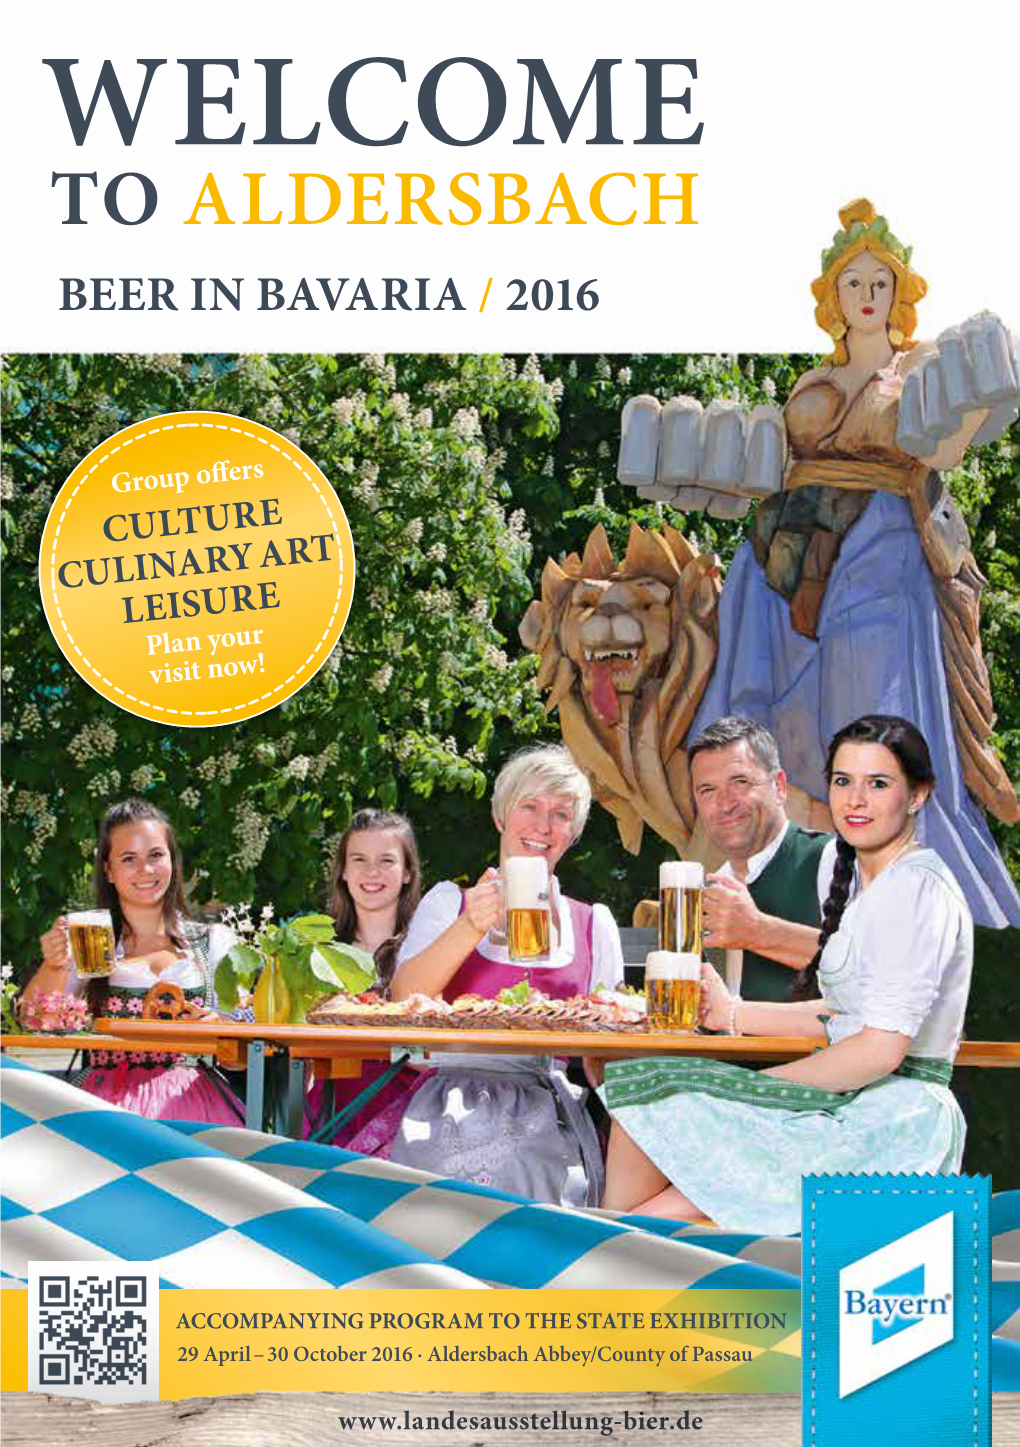 Beer in Bavaria / 2016